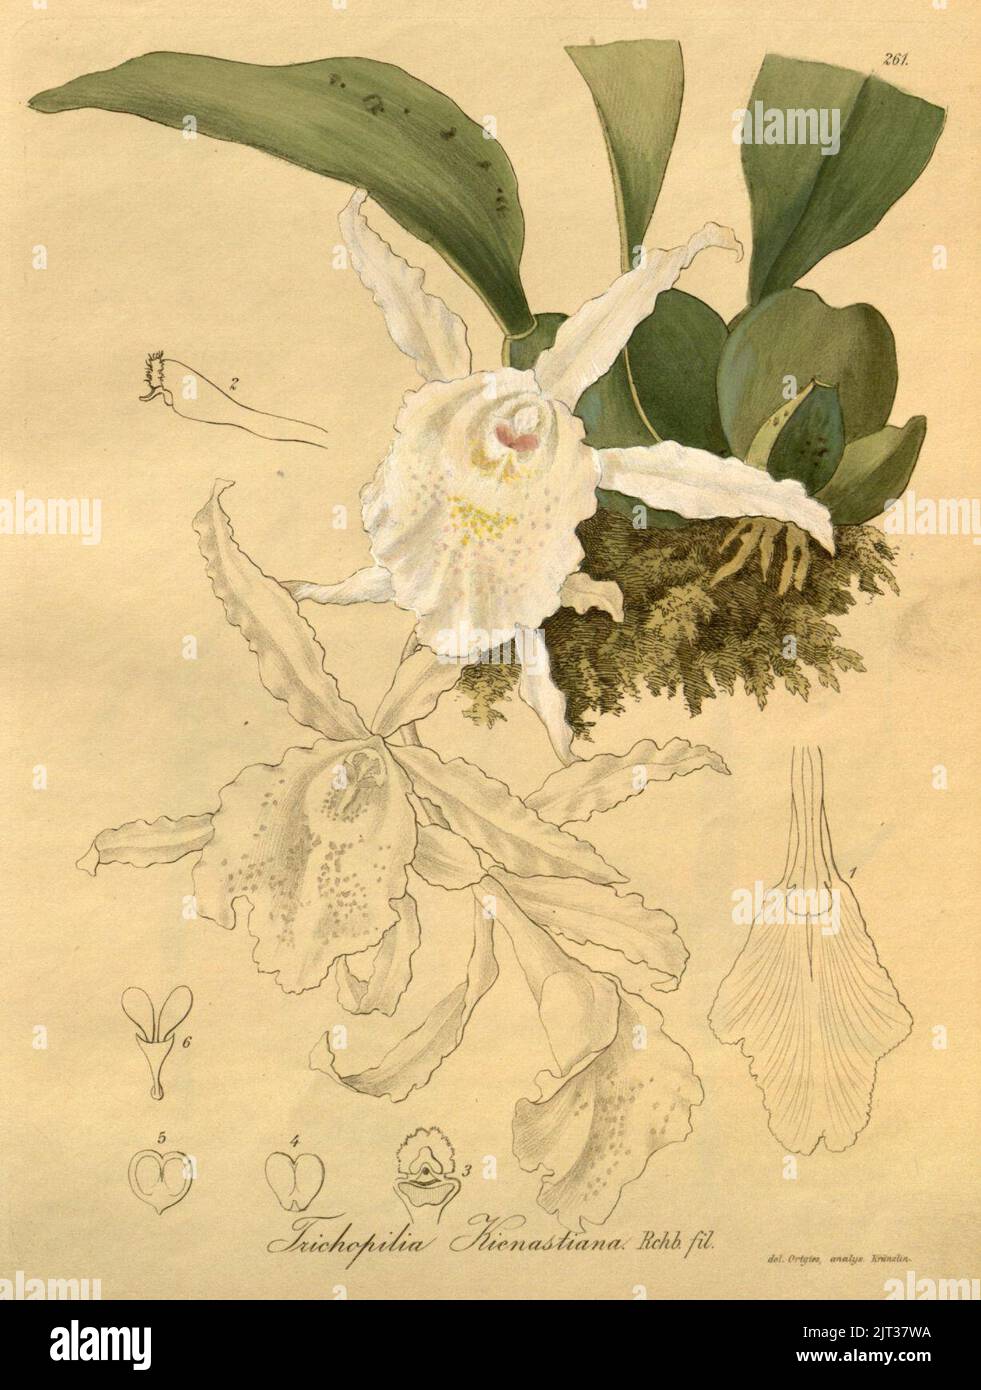 Trichopilia suavis (as Trichopilia kienastiana) - Xenia 3-261 (1893). Stock Photo